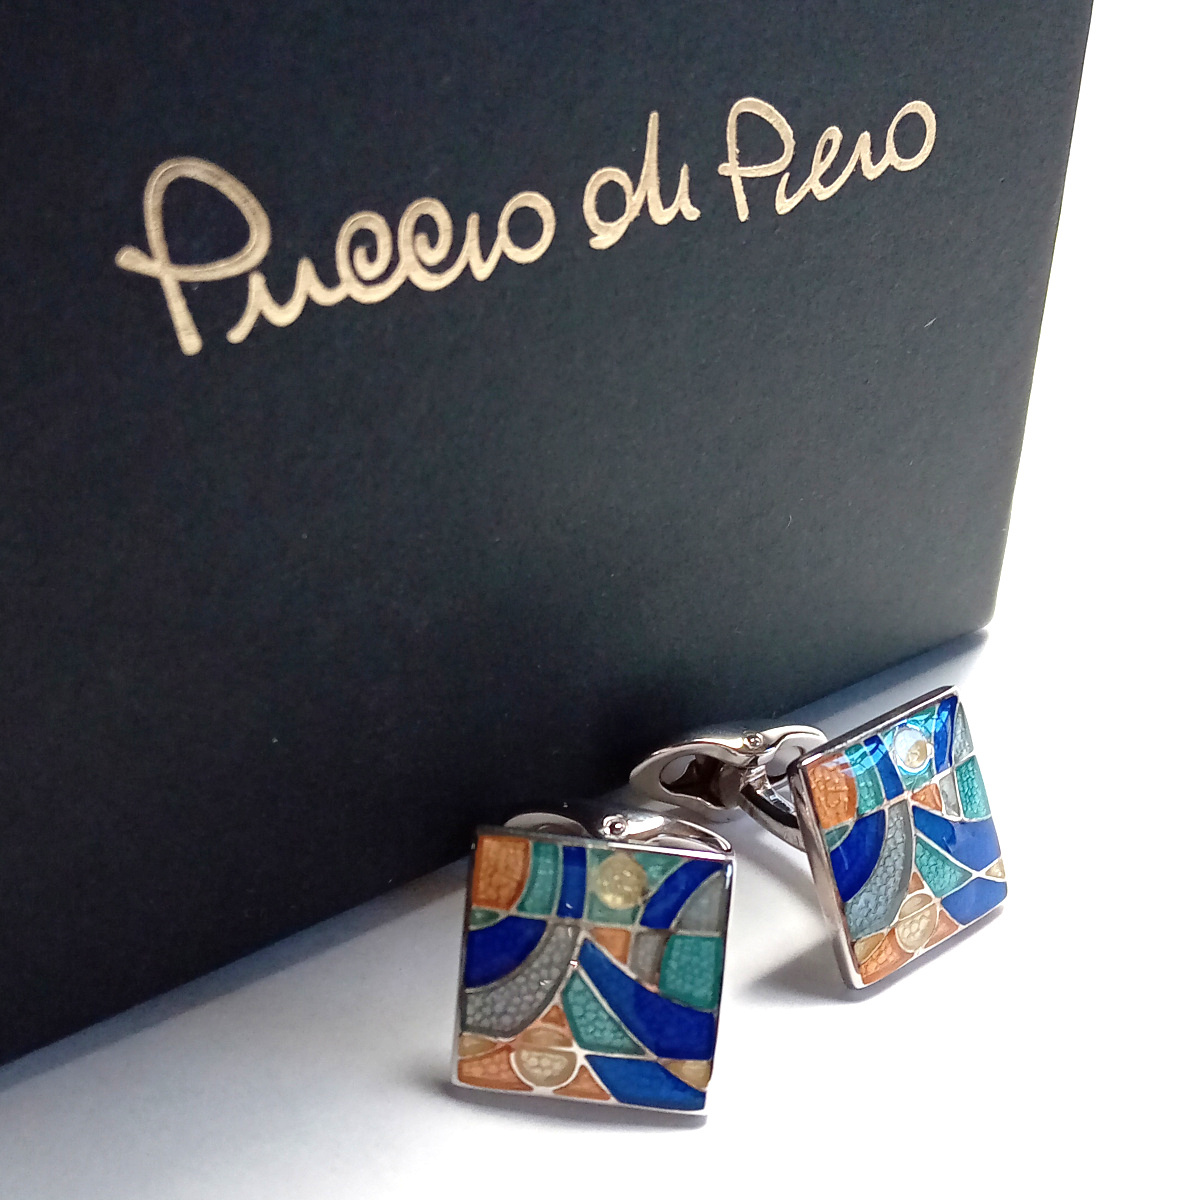 [pdpc3] новый товар Puccio di Pieropchio*ti*piero запонки кафф links серебряный 925 оригинальный серебряный голубой многоцветный квадратное 